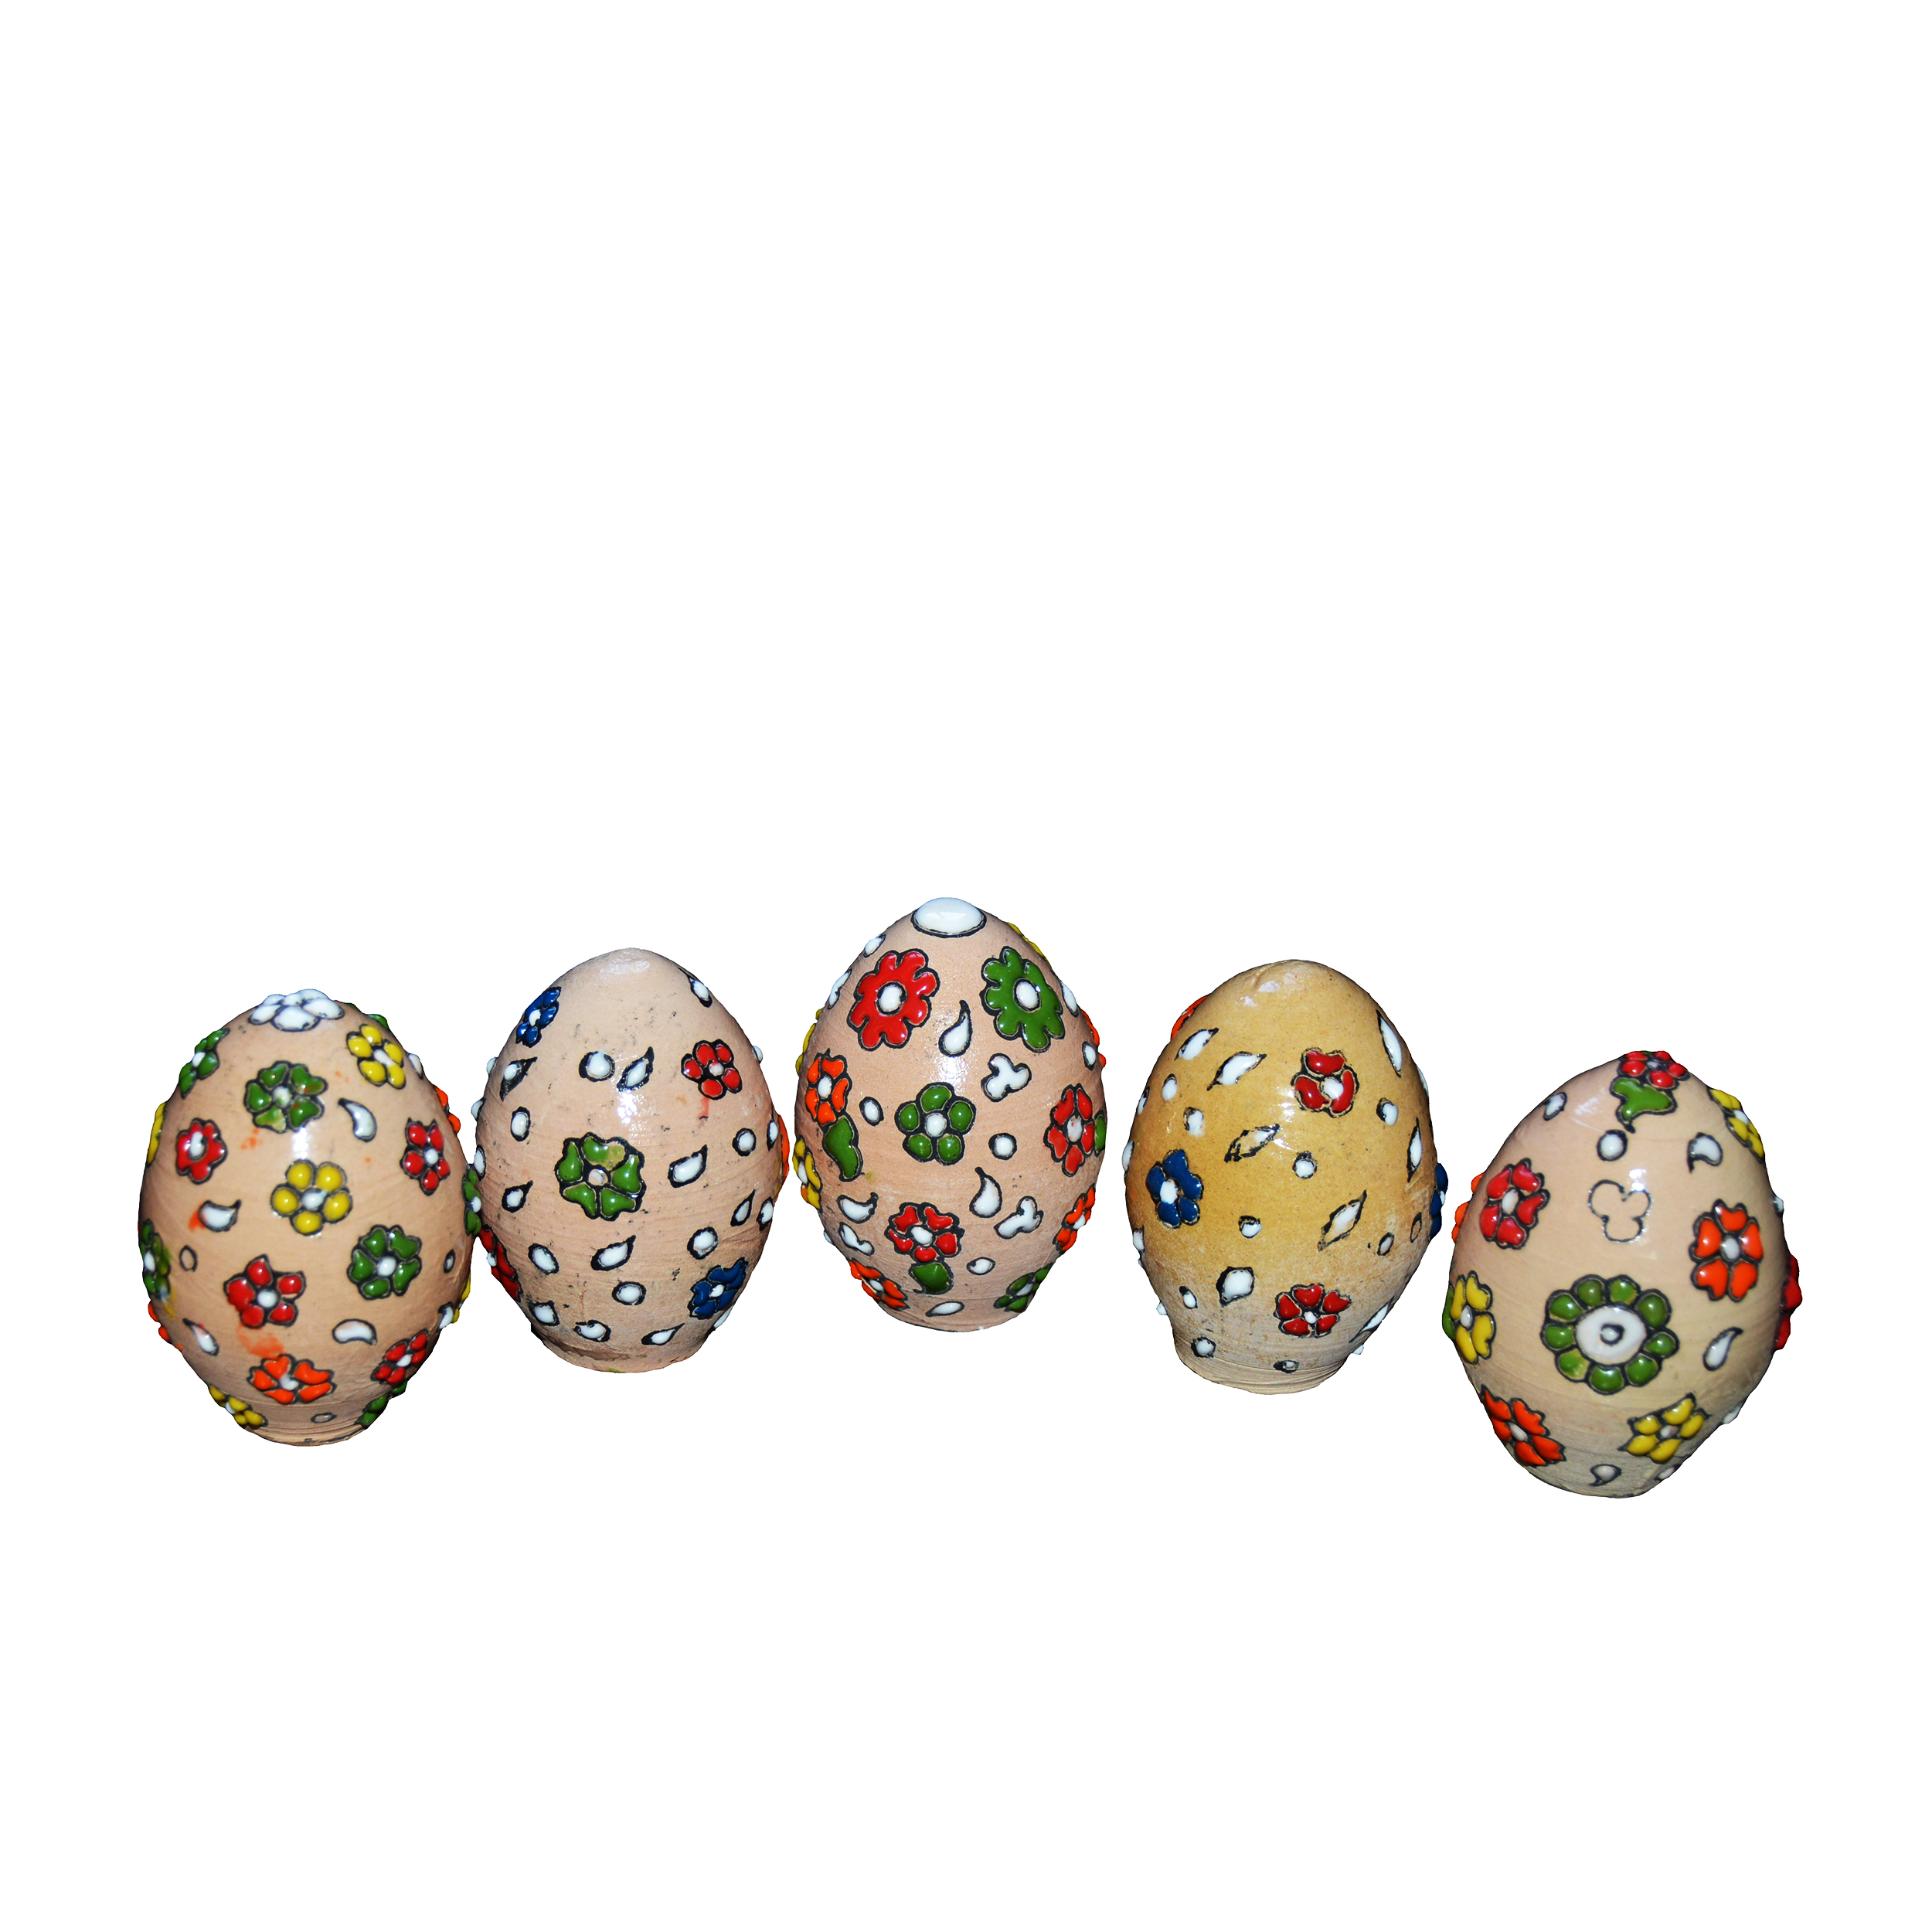 تخم مرغ تزئینی مدل گلبرگ مجموعه 5 عددی 